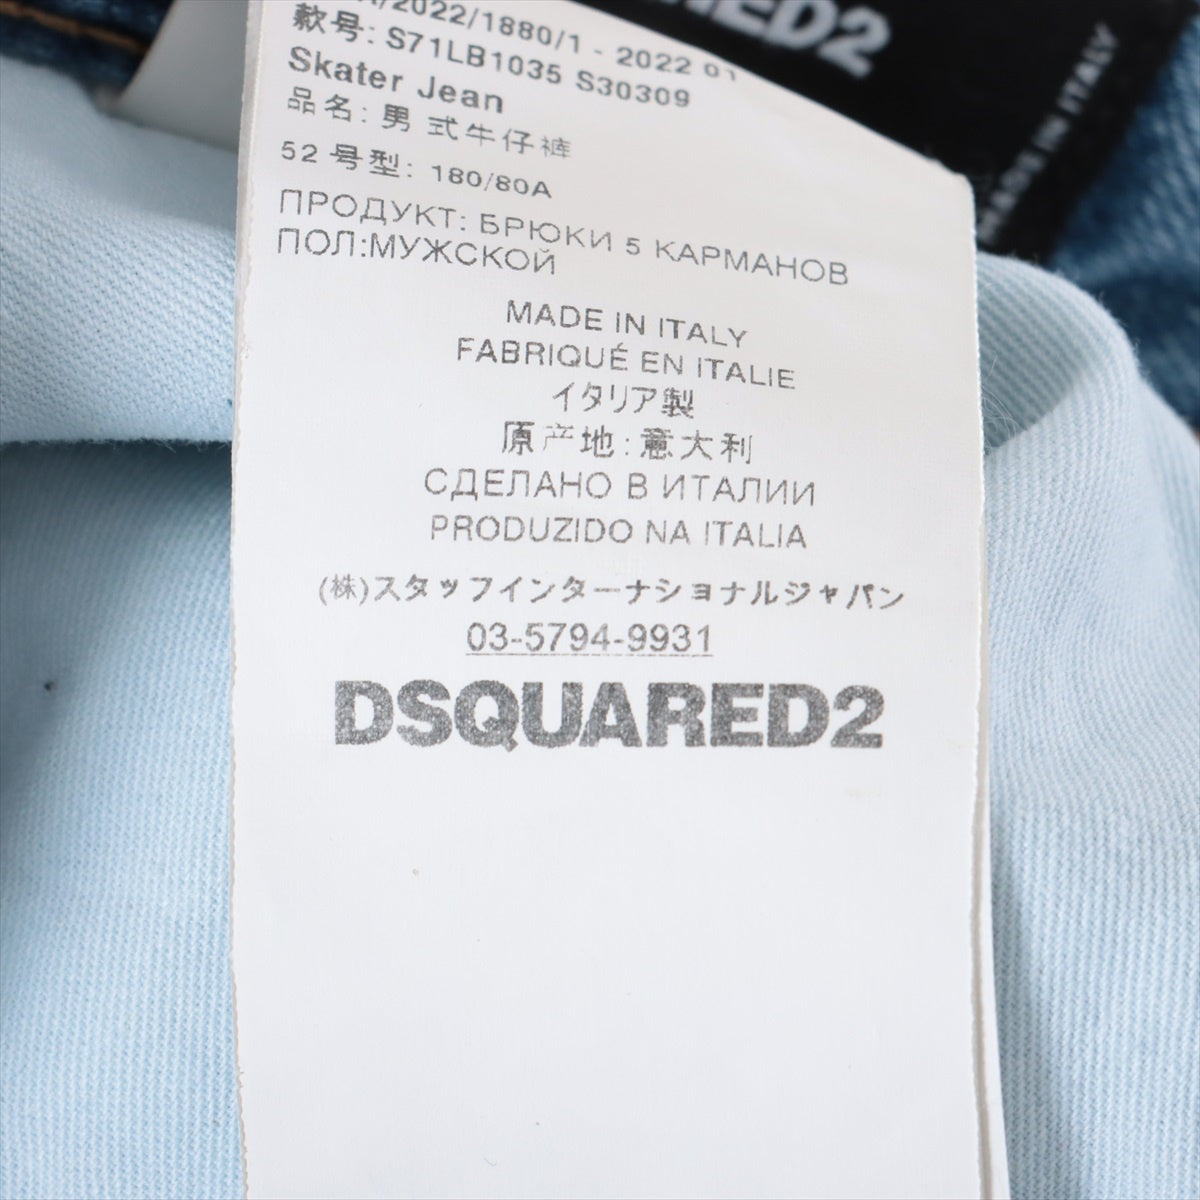 ディースクエアード 22SS コットン×ポリエステル デニムパンツ 52 メンズ ブルー S71LB1035